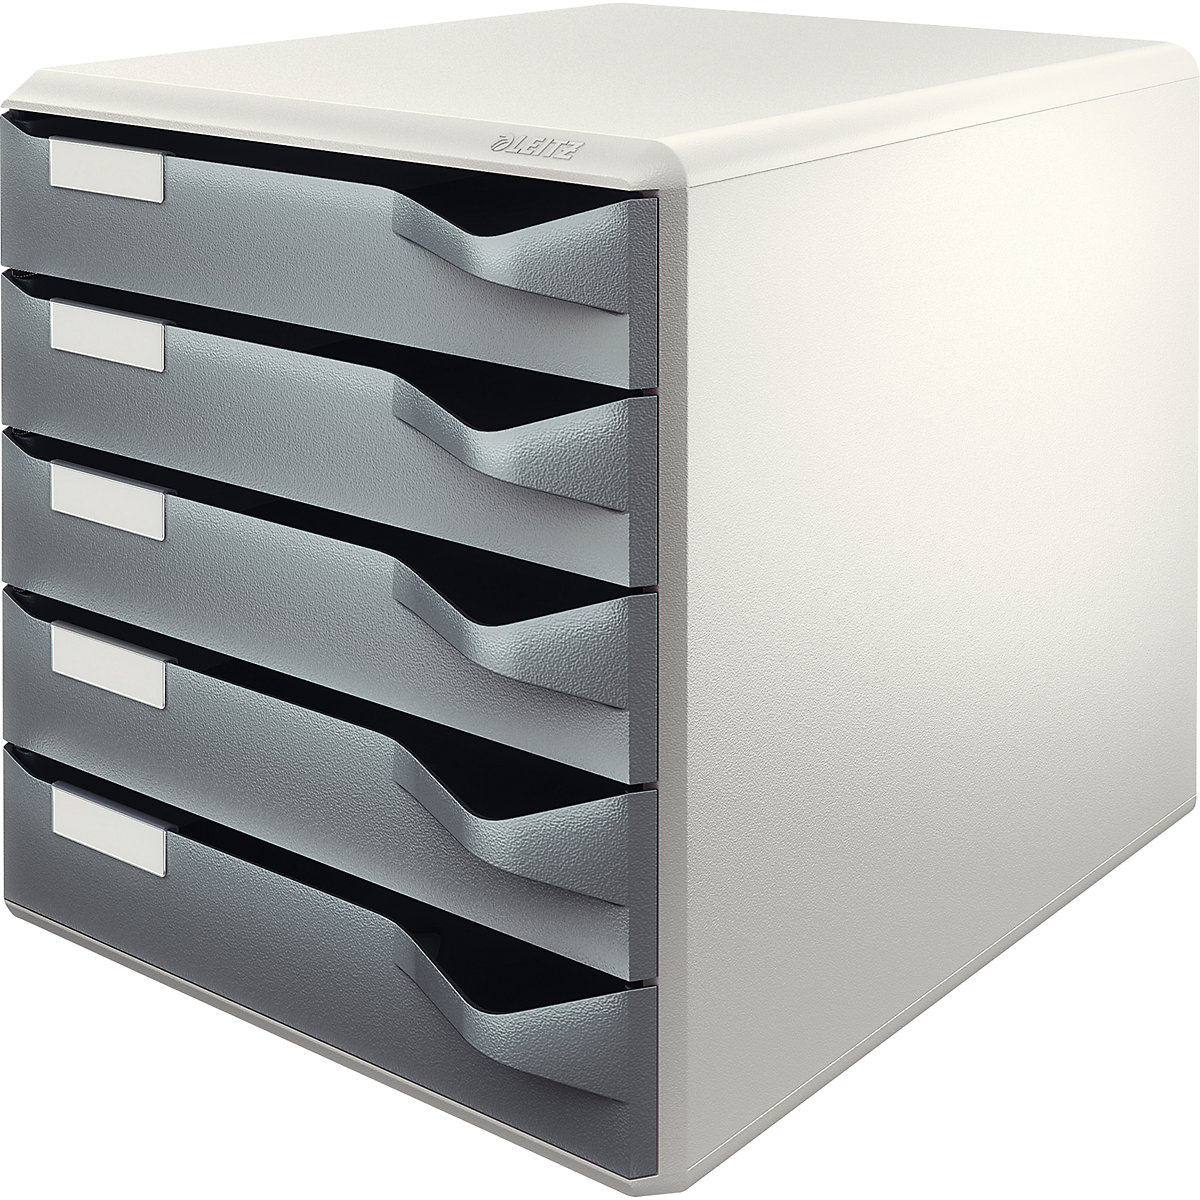 Kutija za odlaganje – Leitz, komplet za poštu i obrasce, kućište u sivoj boji, ladice u tamnosivoj boji, 5 ladica-7